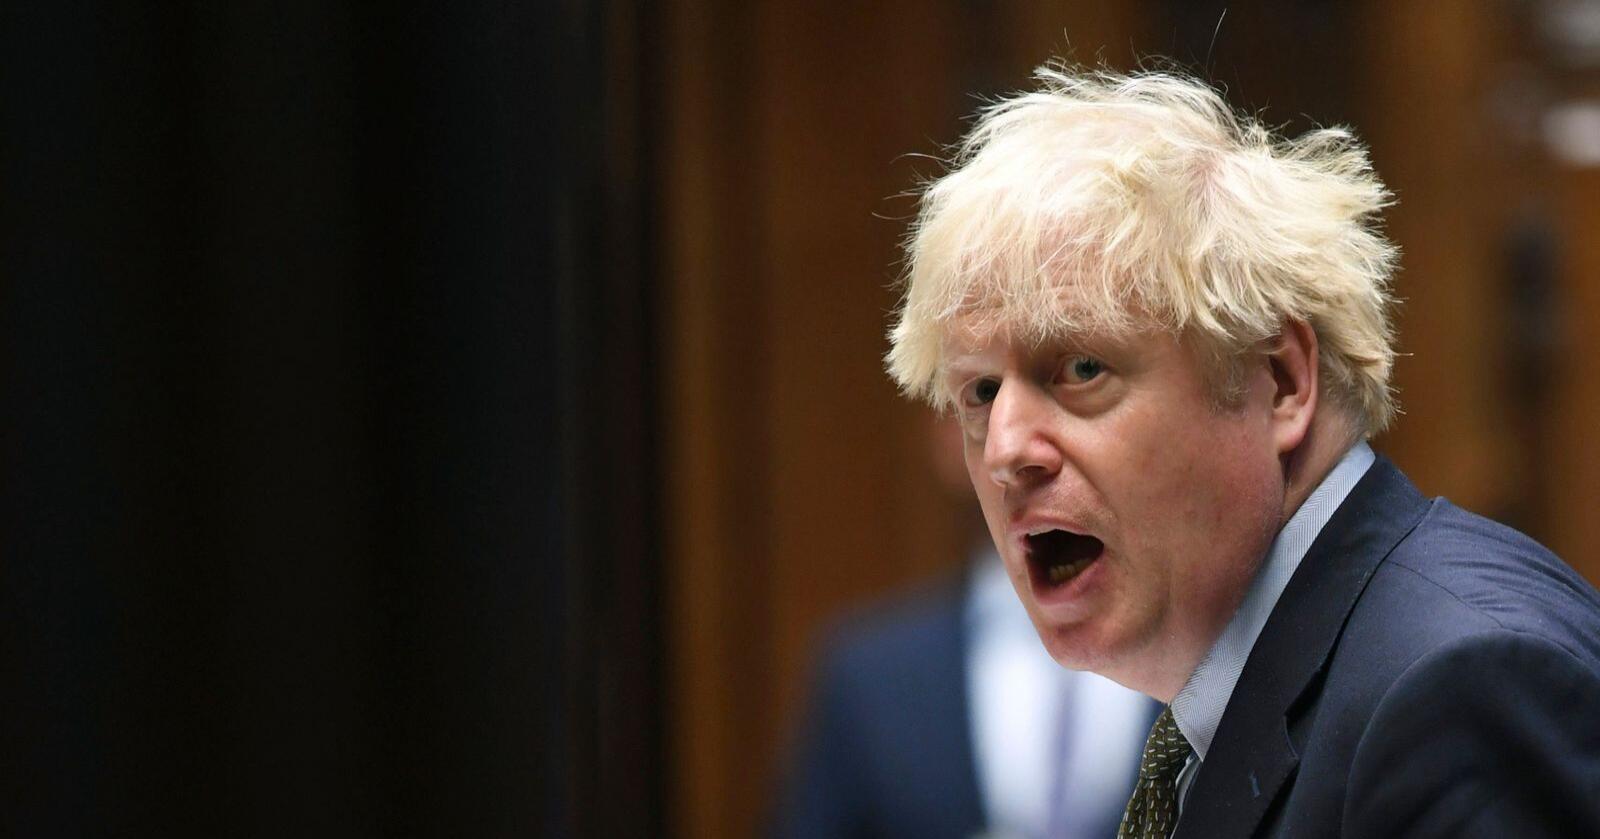 Et annet fokus: Mens Høyre er mest opptatt av å bremse svært lave matprisøkninger, legger den konservative regjeringssjefen Boris Johnson opp til å bedre matproduksjonens kår. Foto: Jessica Taylor/UK Parliament via AP